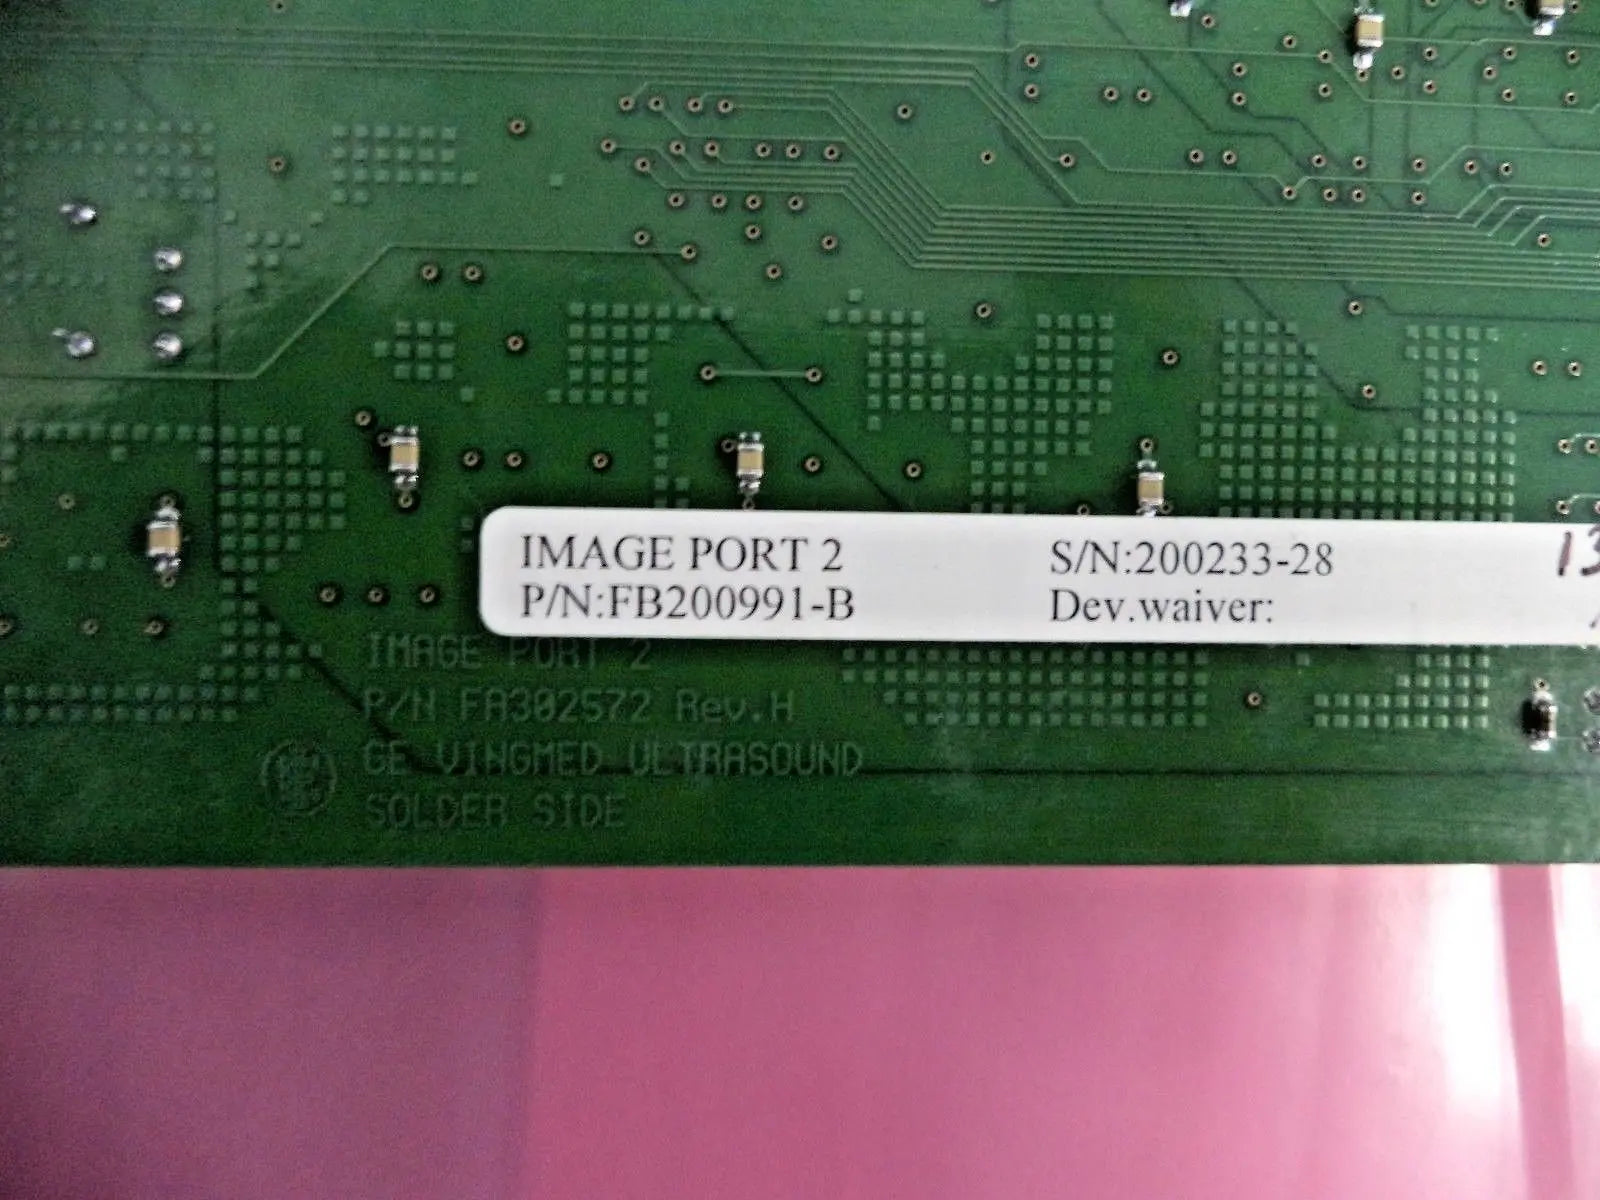 GE Vivid 7 Ultrasound Image Port 2 Board (PN: FB200991-B) DIAGNOSTIC ULTRASOUND MACHINES FOR SALE